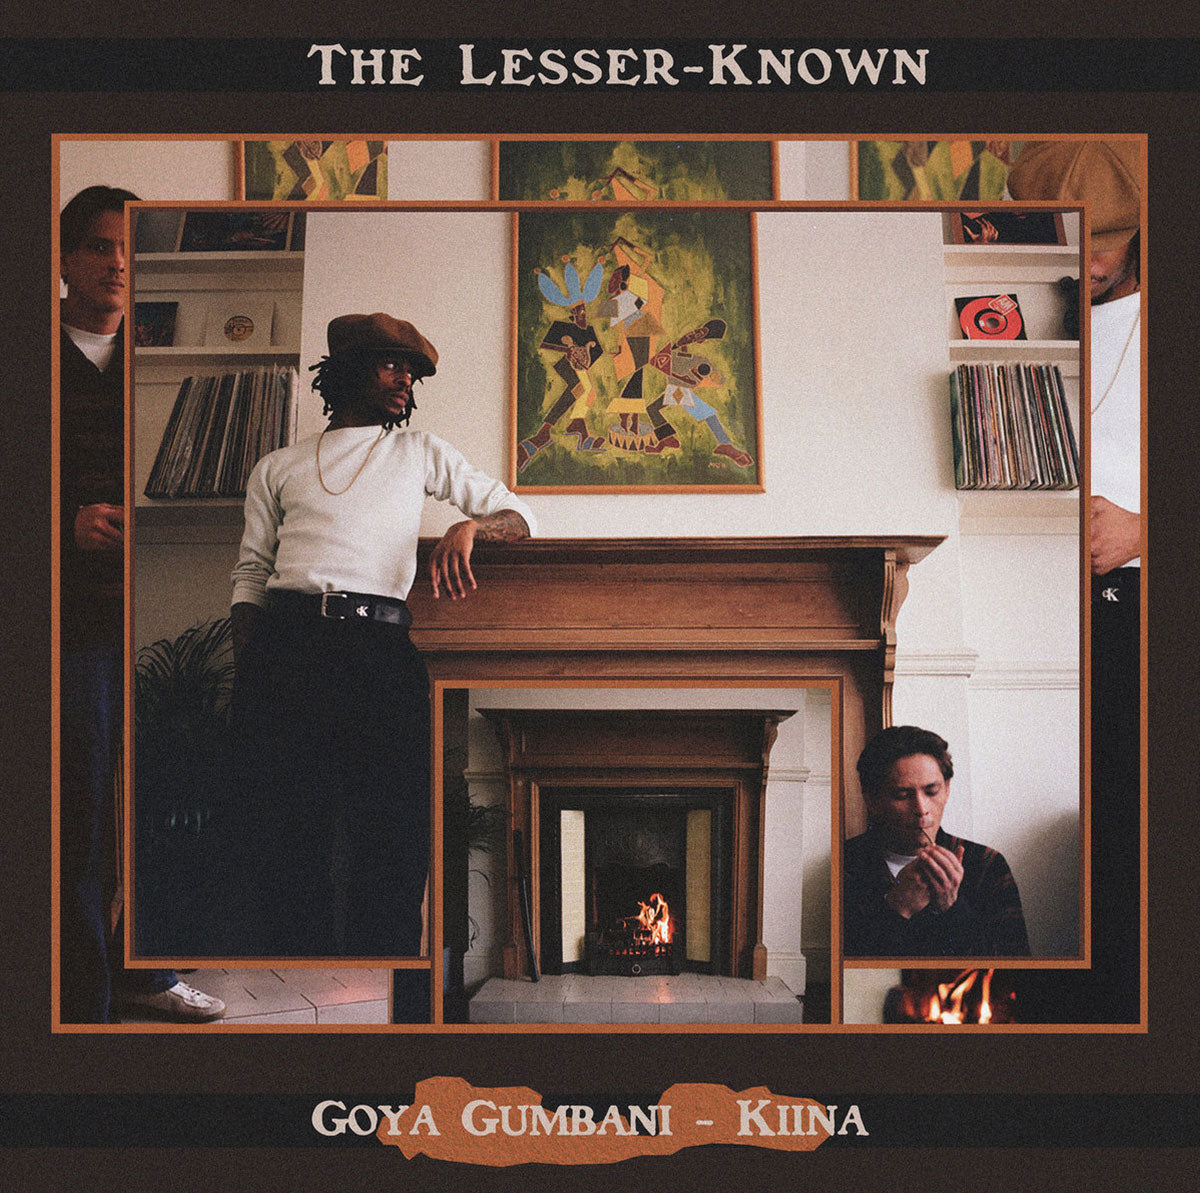 Goya Gumbani & Kiina - The Lesser-Known [LP]